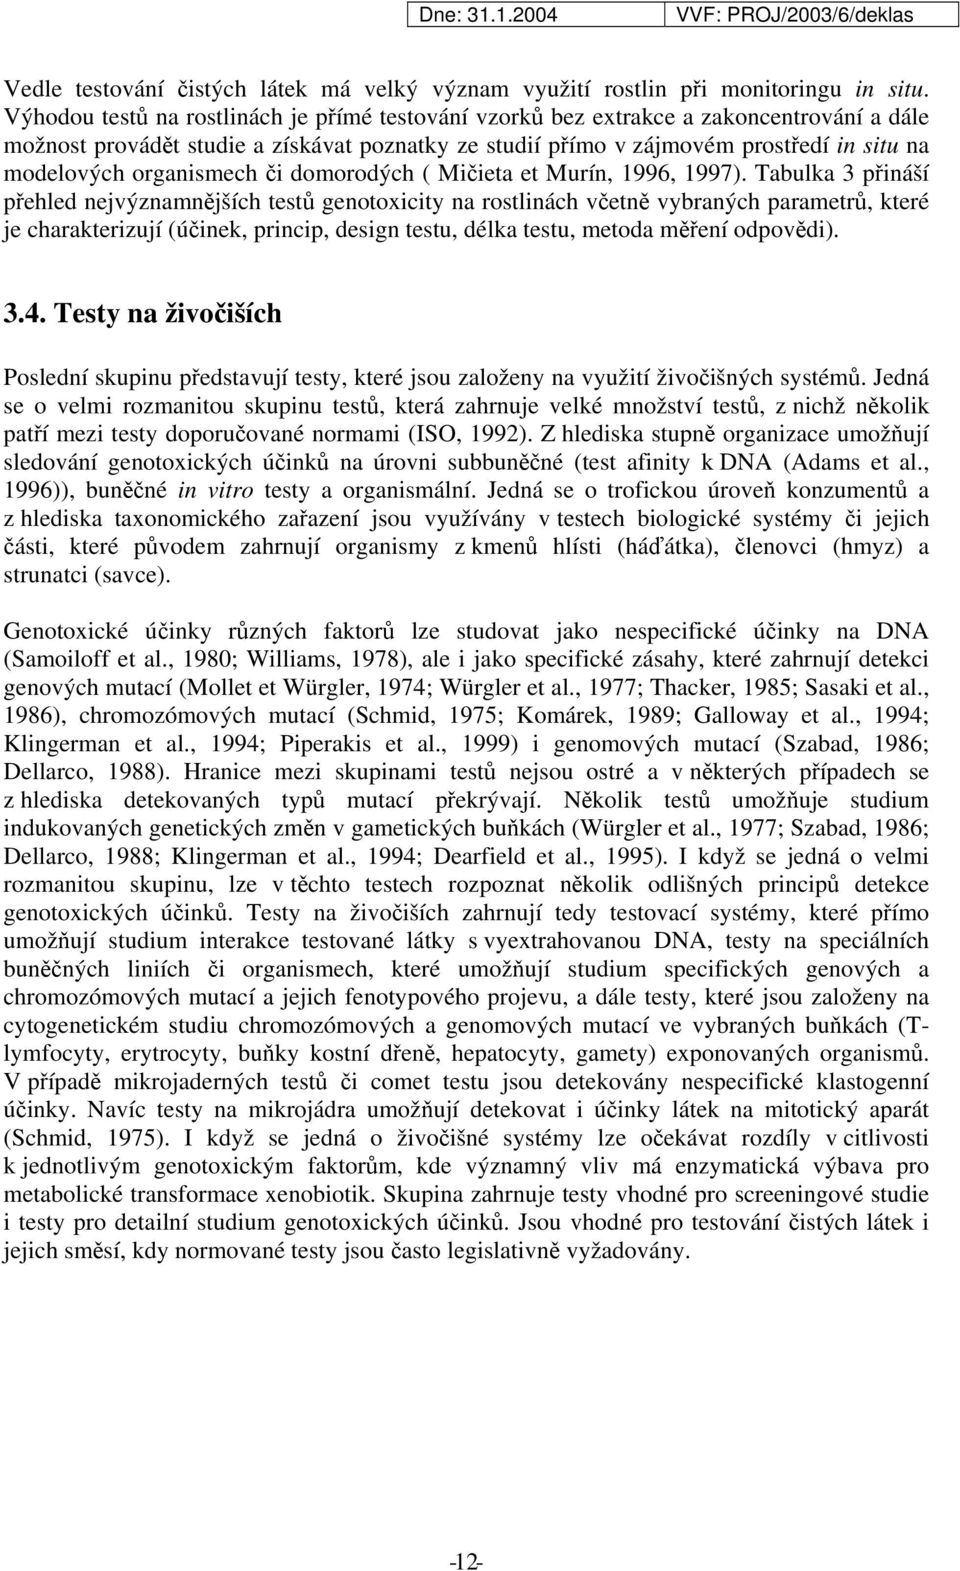 organismech či domorodých ( Mičieta et Murín, 1996, 1997).